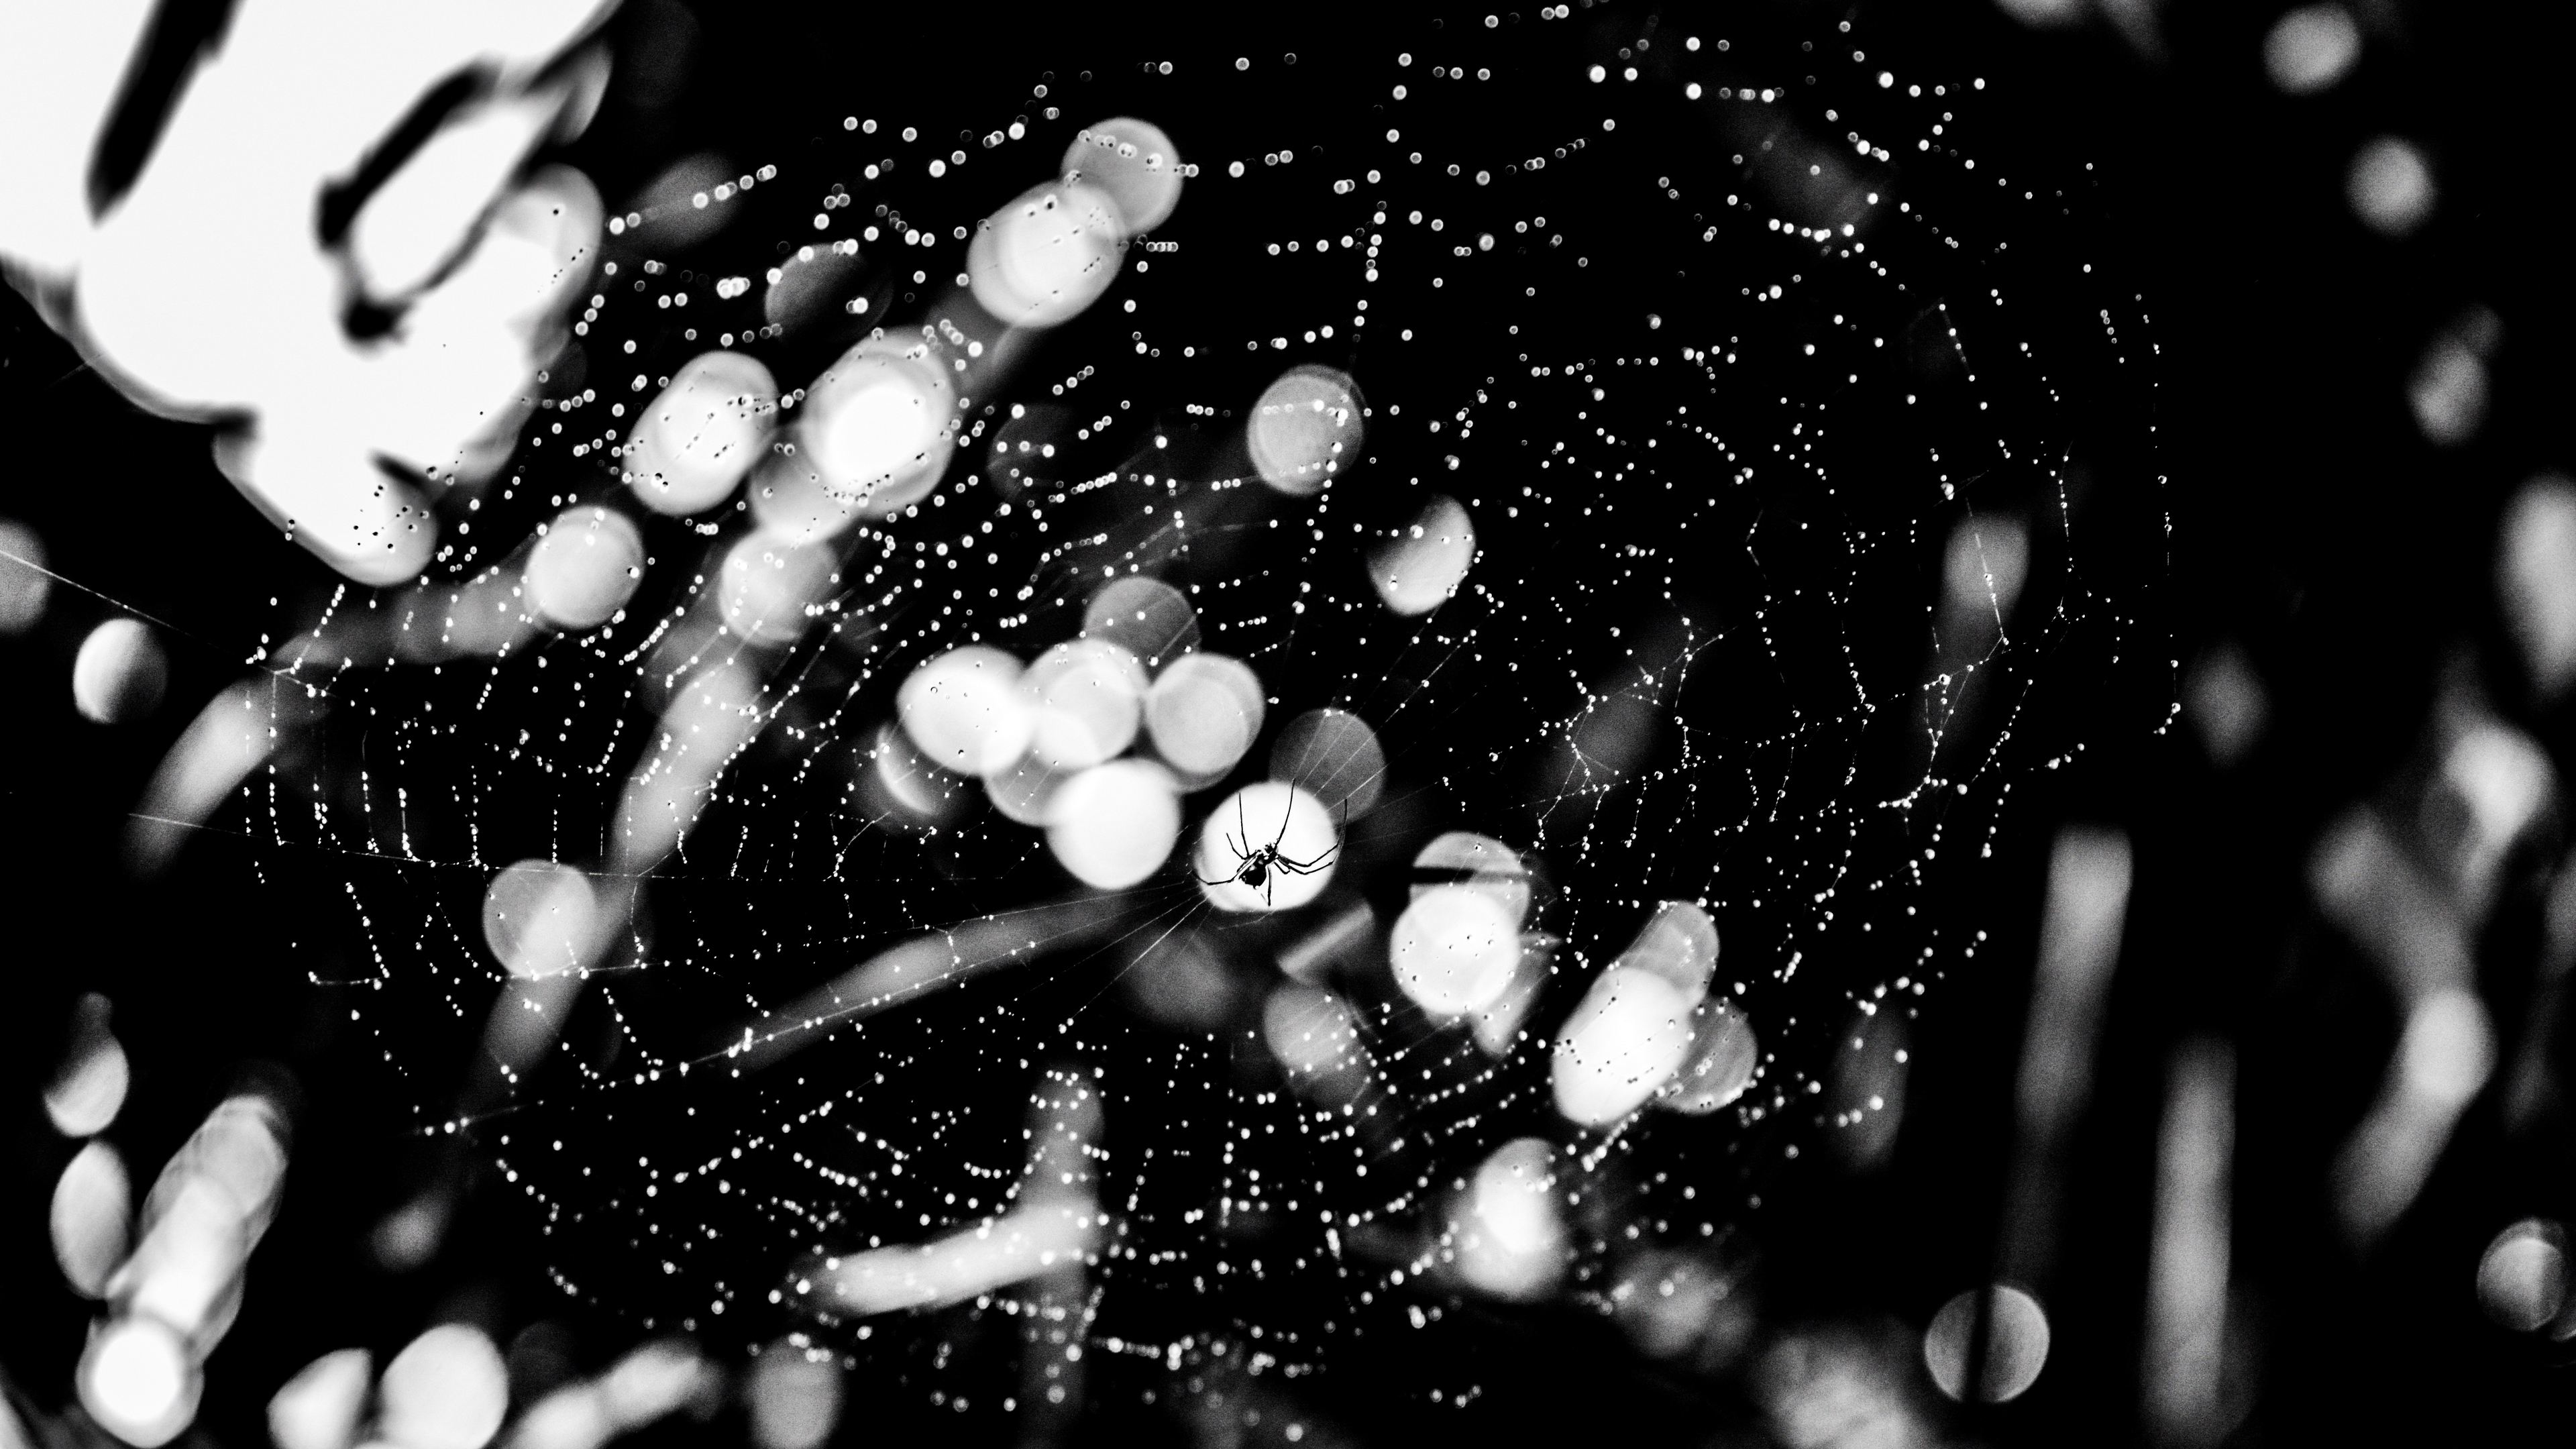 spider spider web drops bw glare 4k 1540574597 - spider, spider web, drops, bw, glare 4k - spider web, Spider, Drops